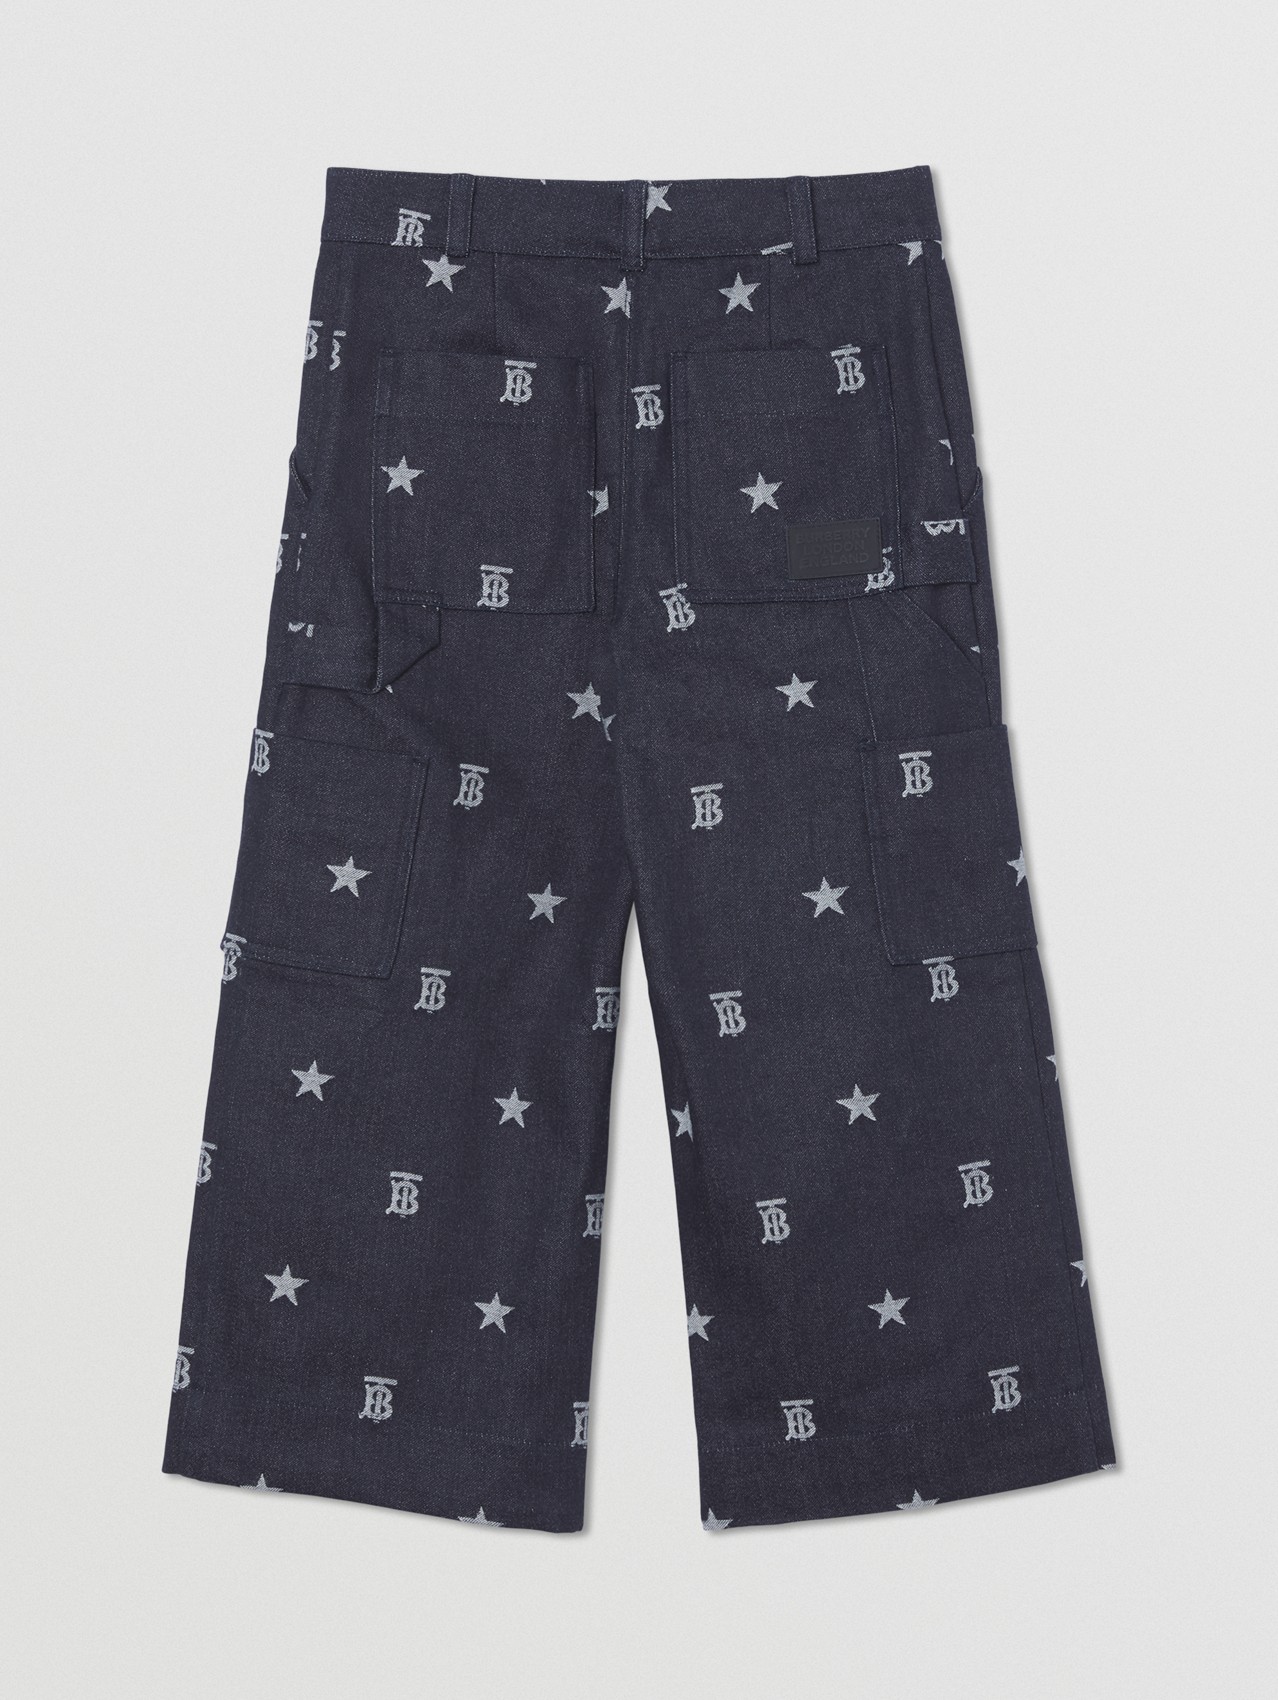 Hose aus japanischem Denim mit Sternen- und Monogrammmotiven (Indigo)